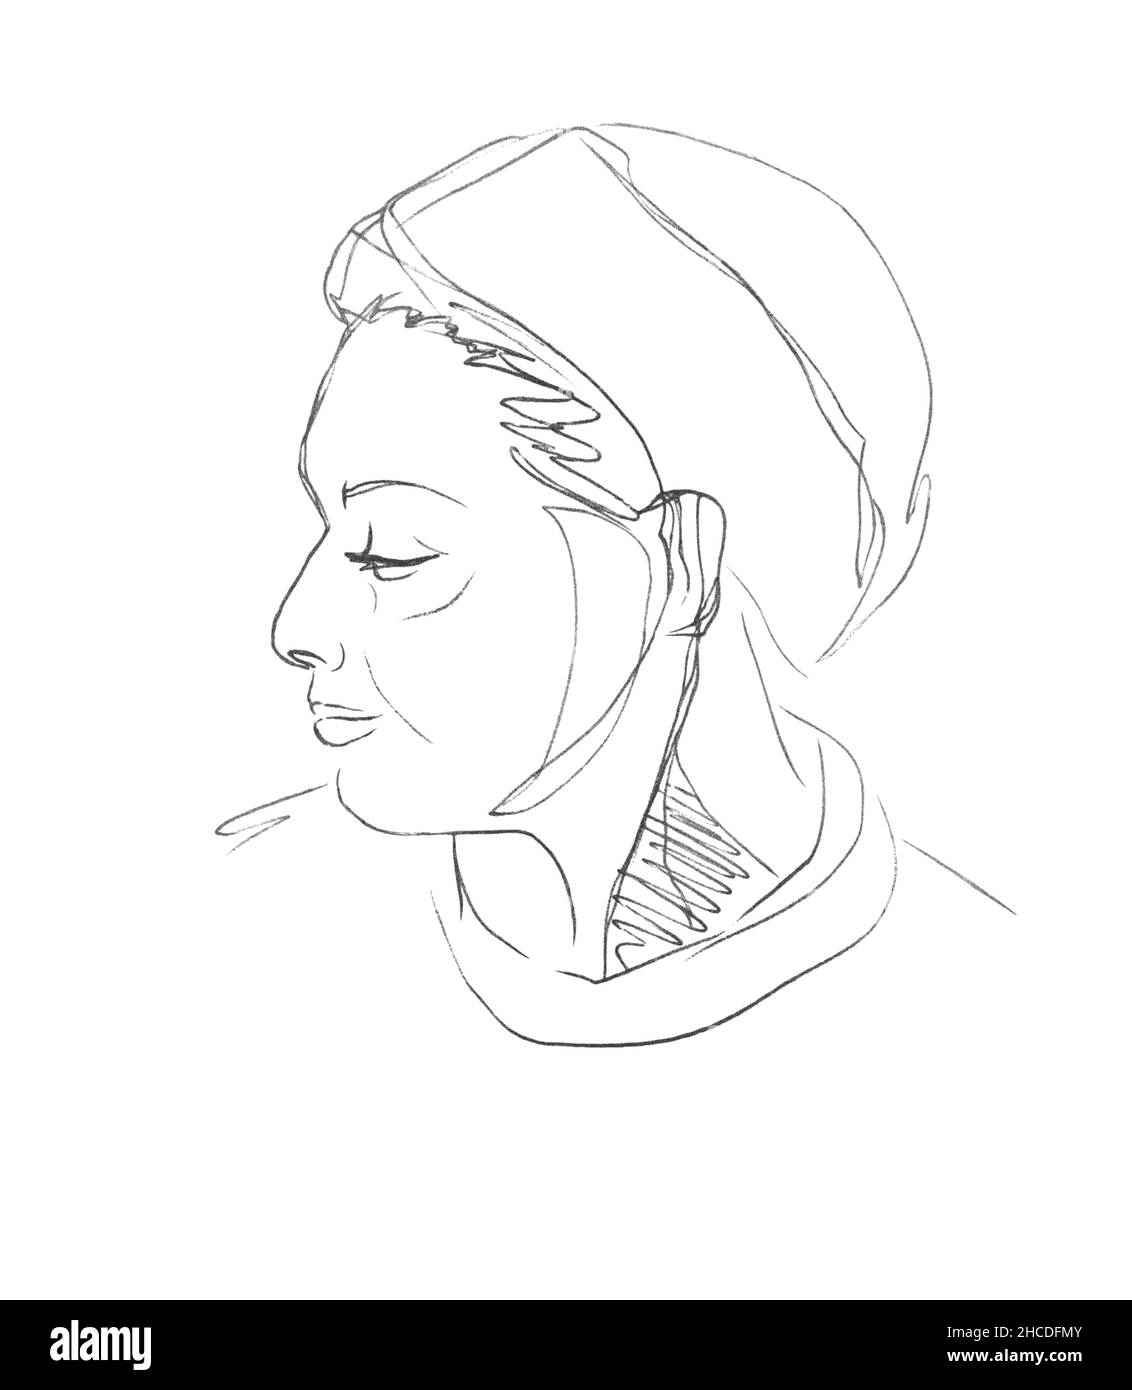 Dessin vectoriel d'un demi-tour du visage d'une femme adulte du Moyen-Orient avec une turban sur la tête.Portrait dessiné au stylo sur papier blanc. Illustration de Vecteur